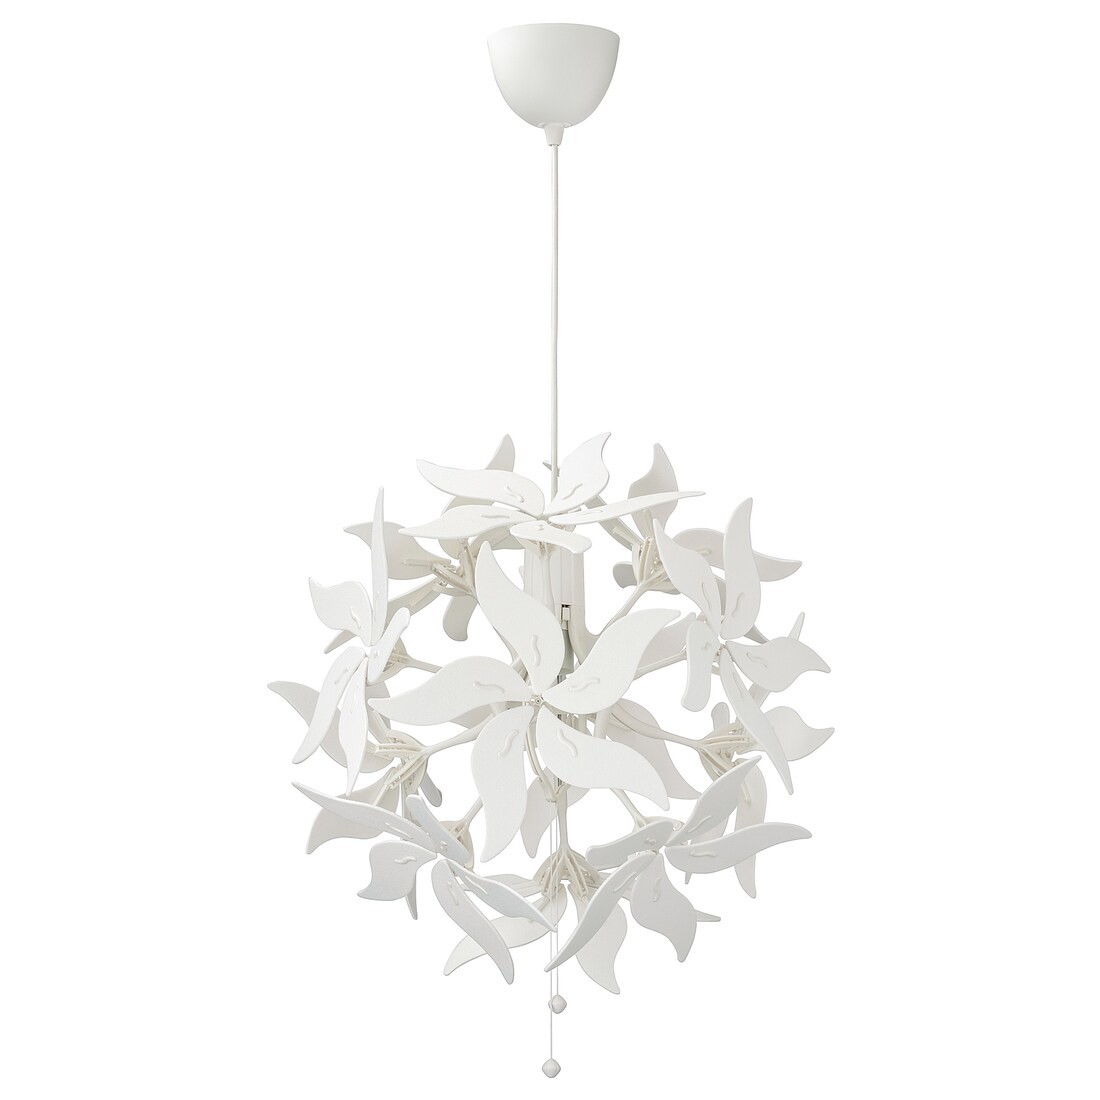 RAMSELE РАМСЕЛЕ Подвесной светильник, цветок / белый, 43 см